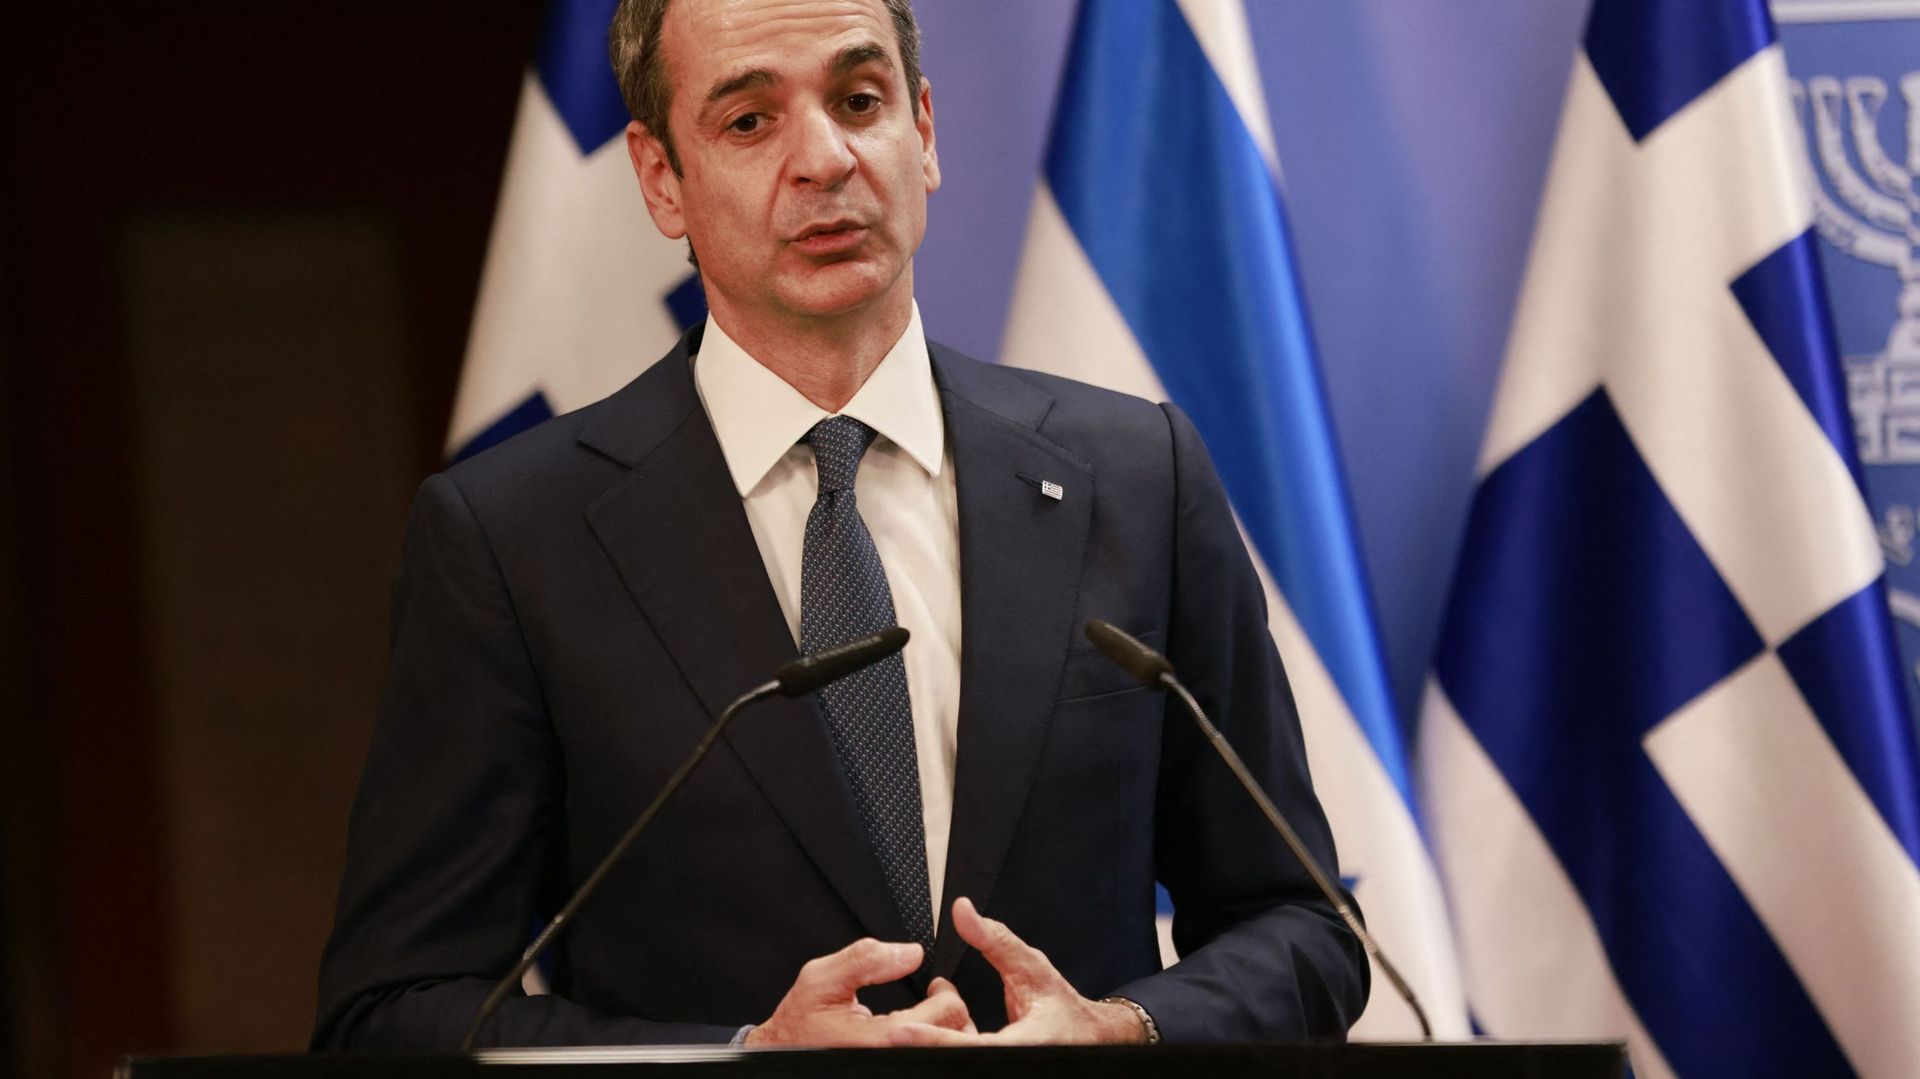 Le premier ministre grec Mitsotakis lors d'une visite en Israël en février dernier (image d'illustration)